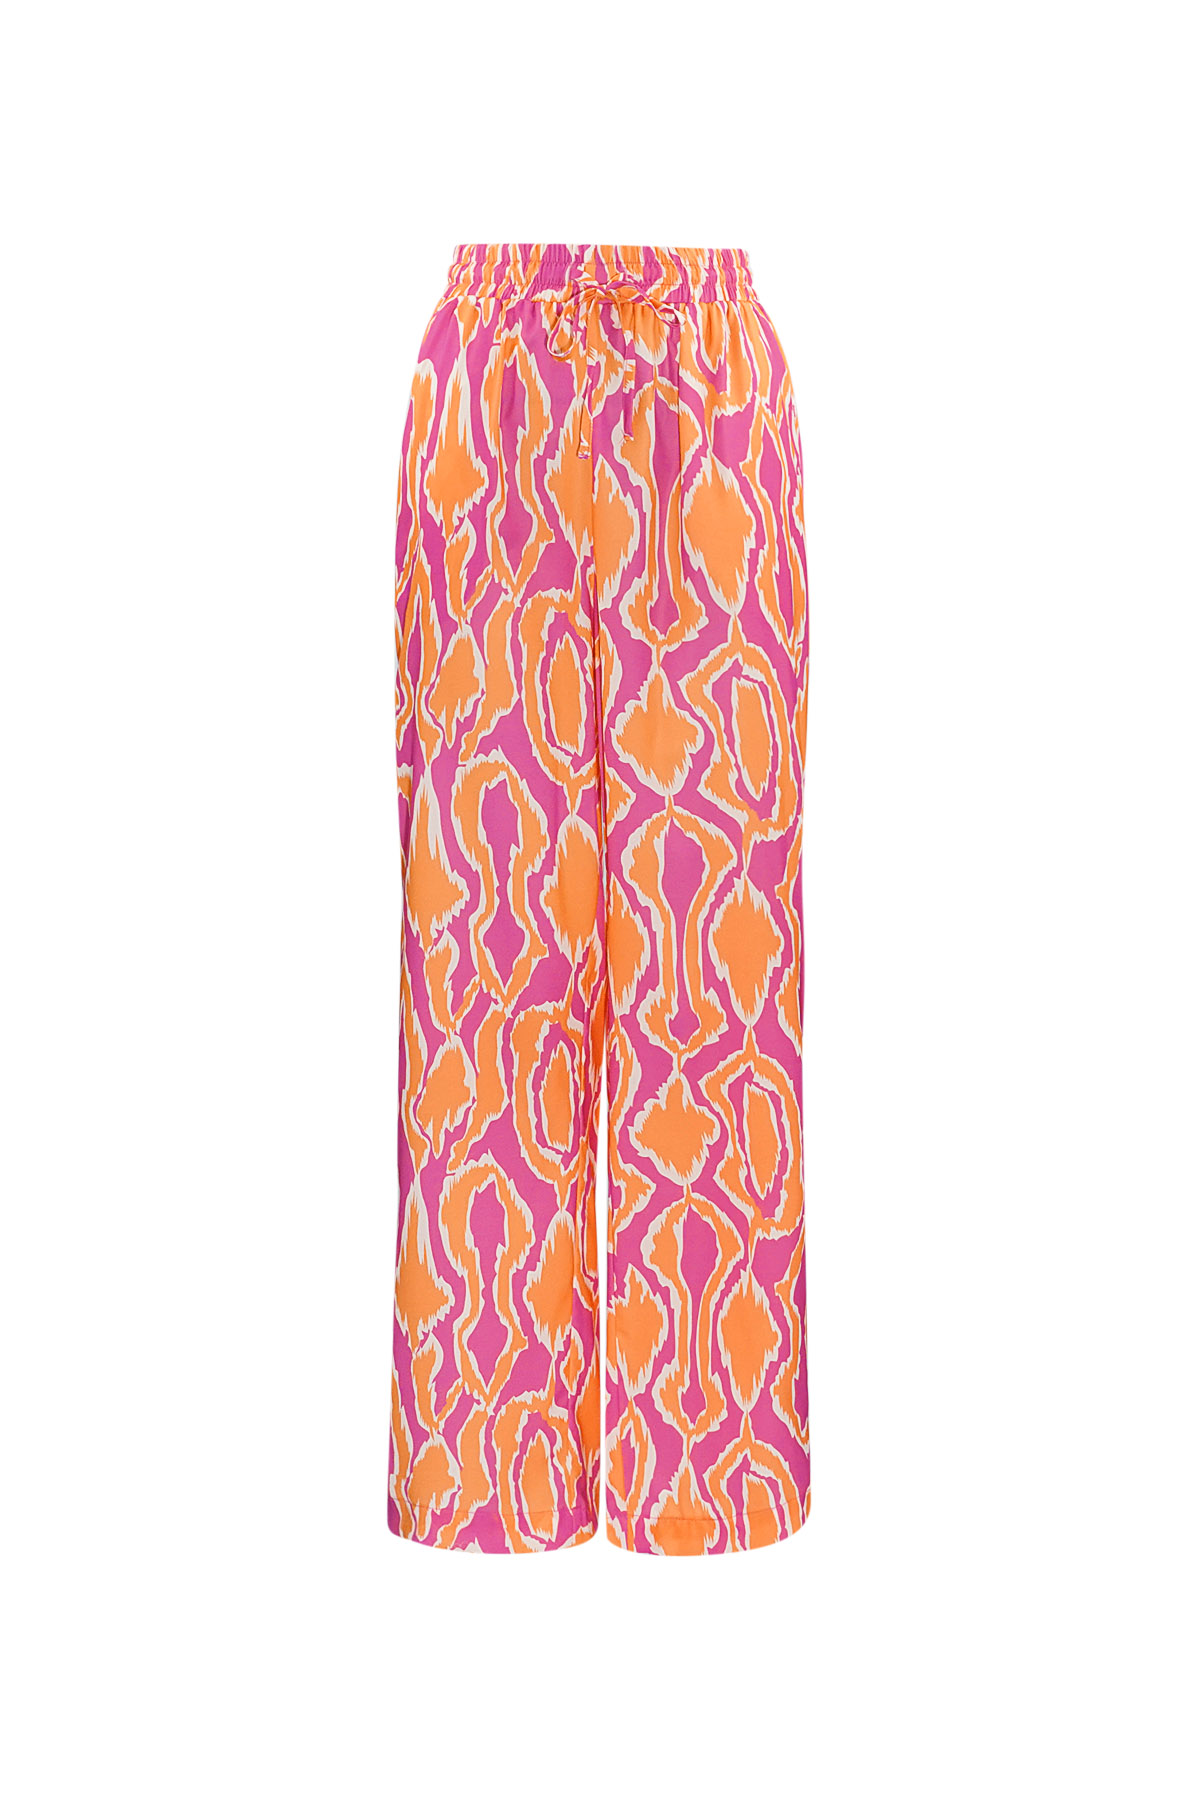 Kleurrijke broek met print - oranje/roze 